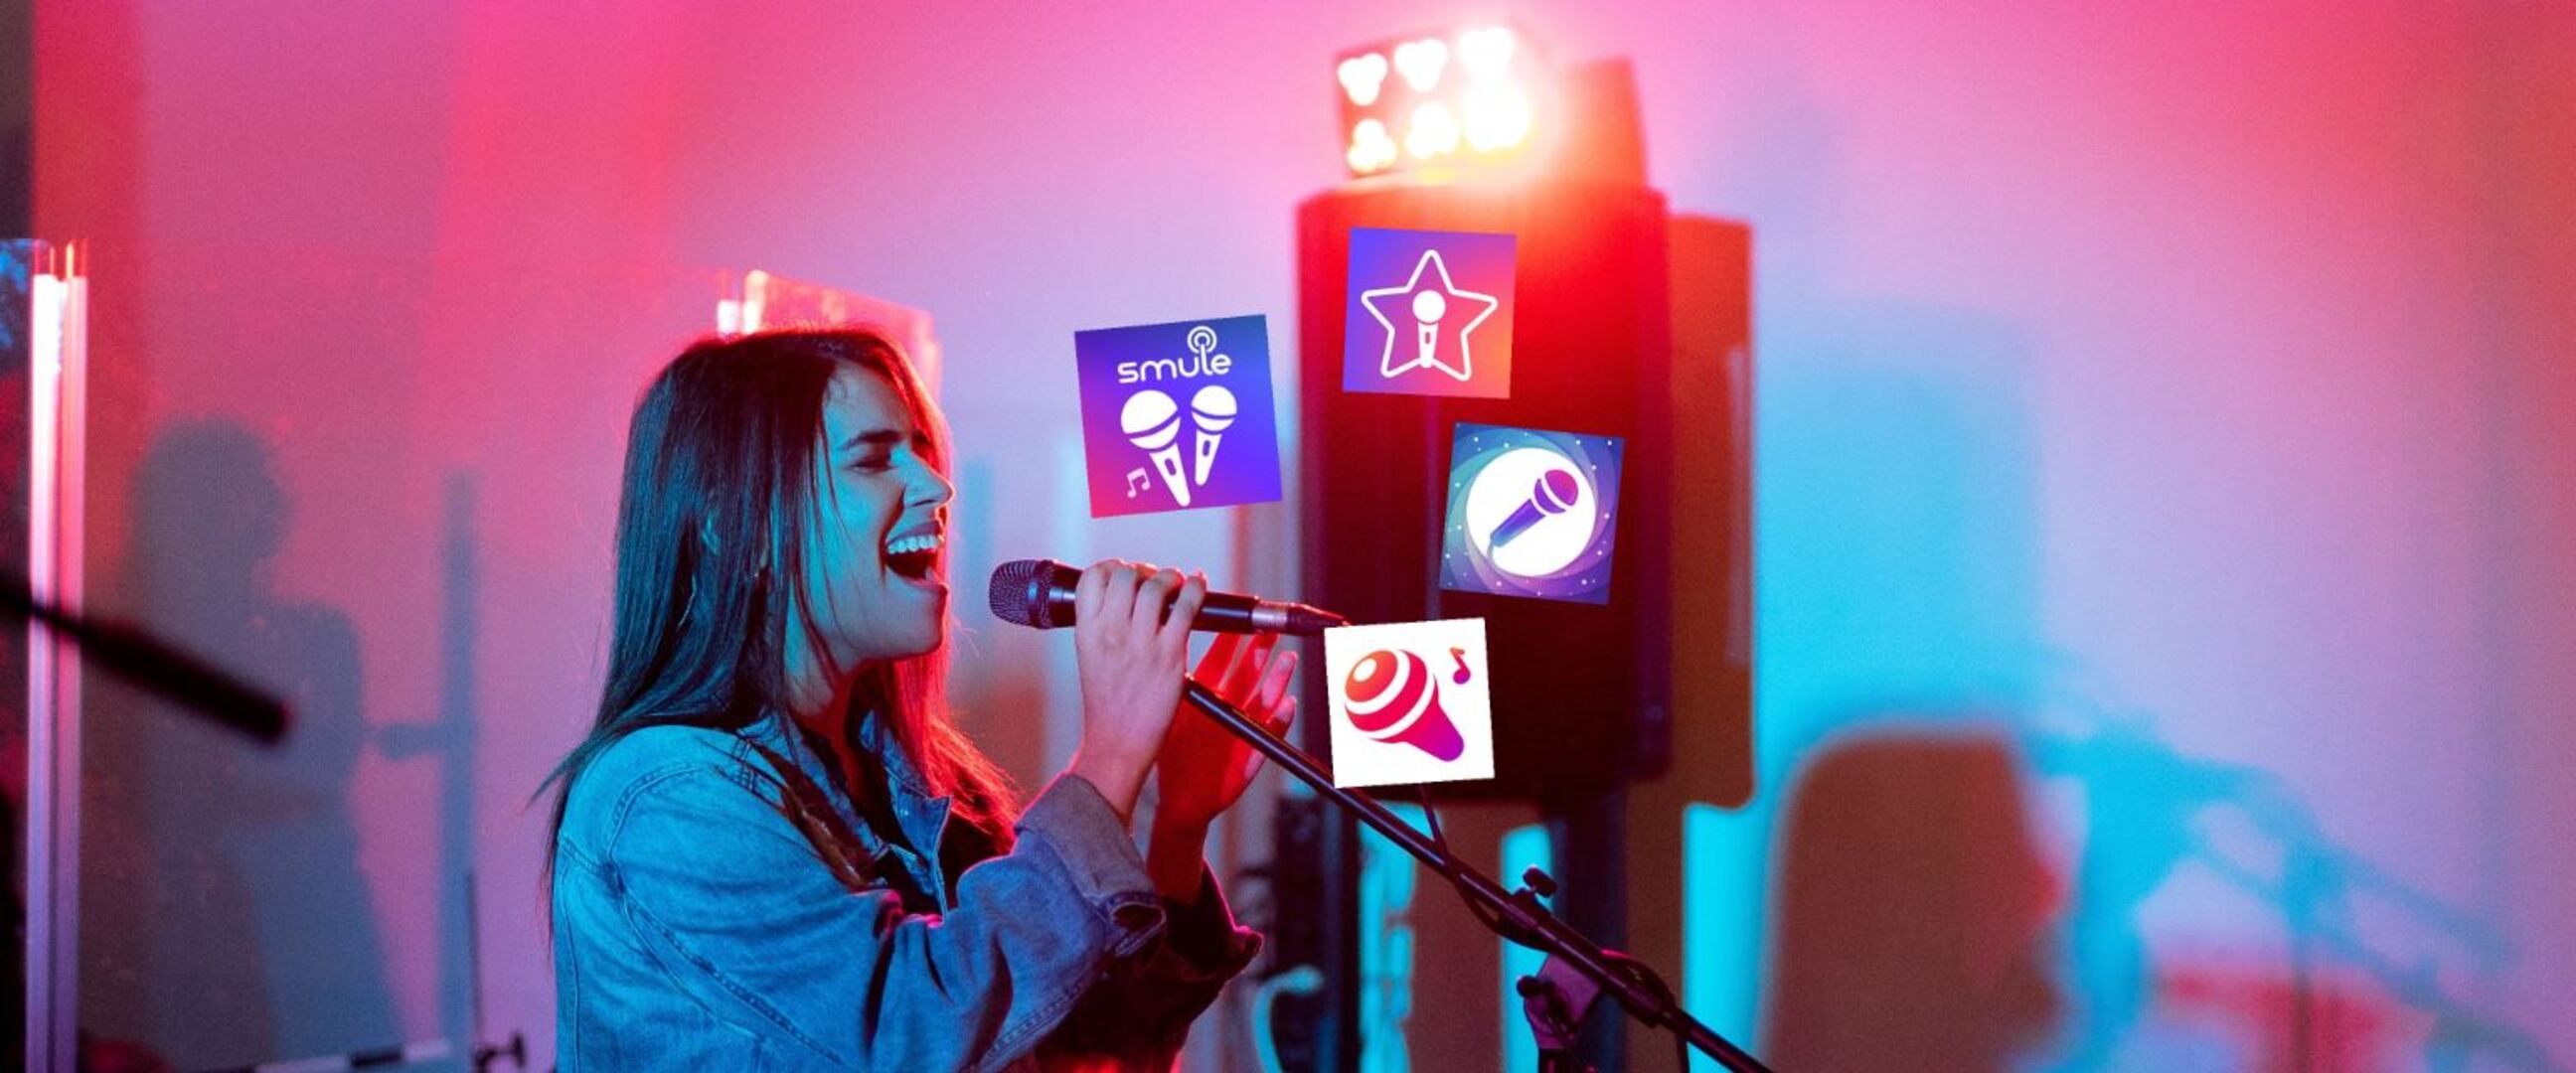 11 Aplikasi karaoke gratis di Android, hilangkan stres tanpa bayar